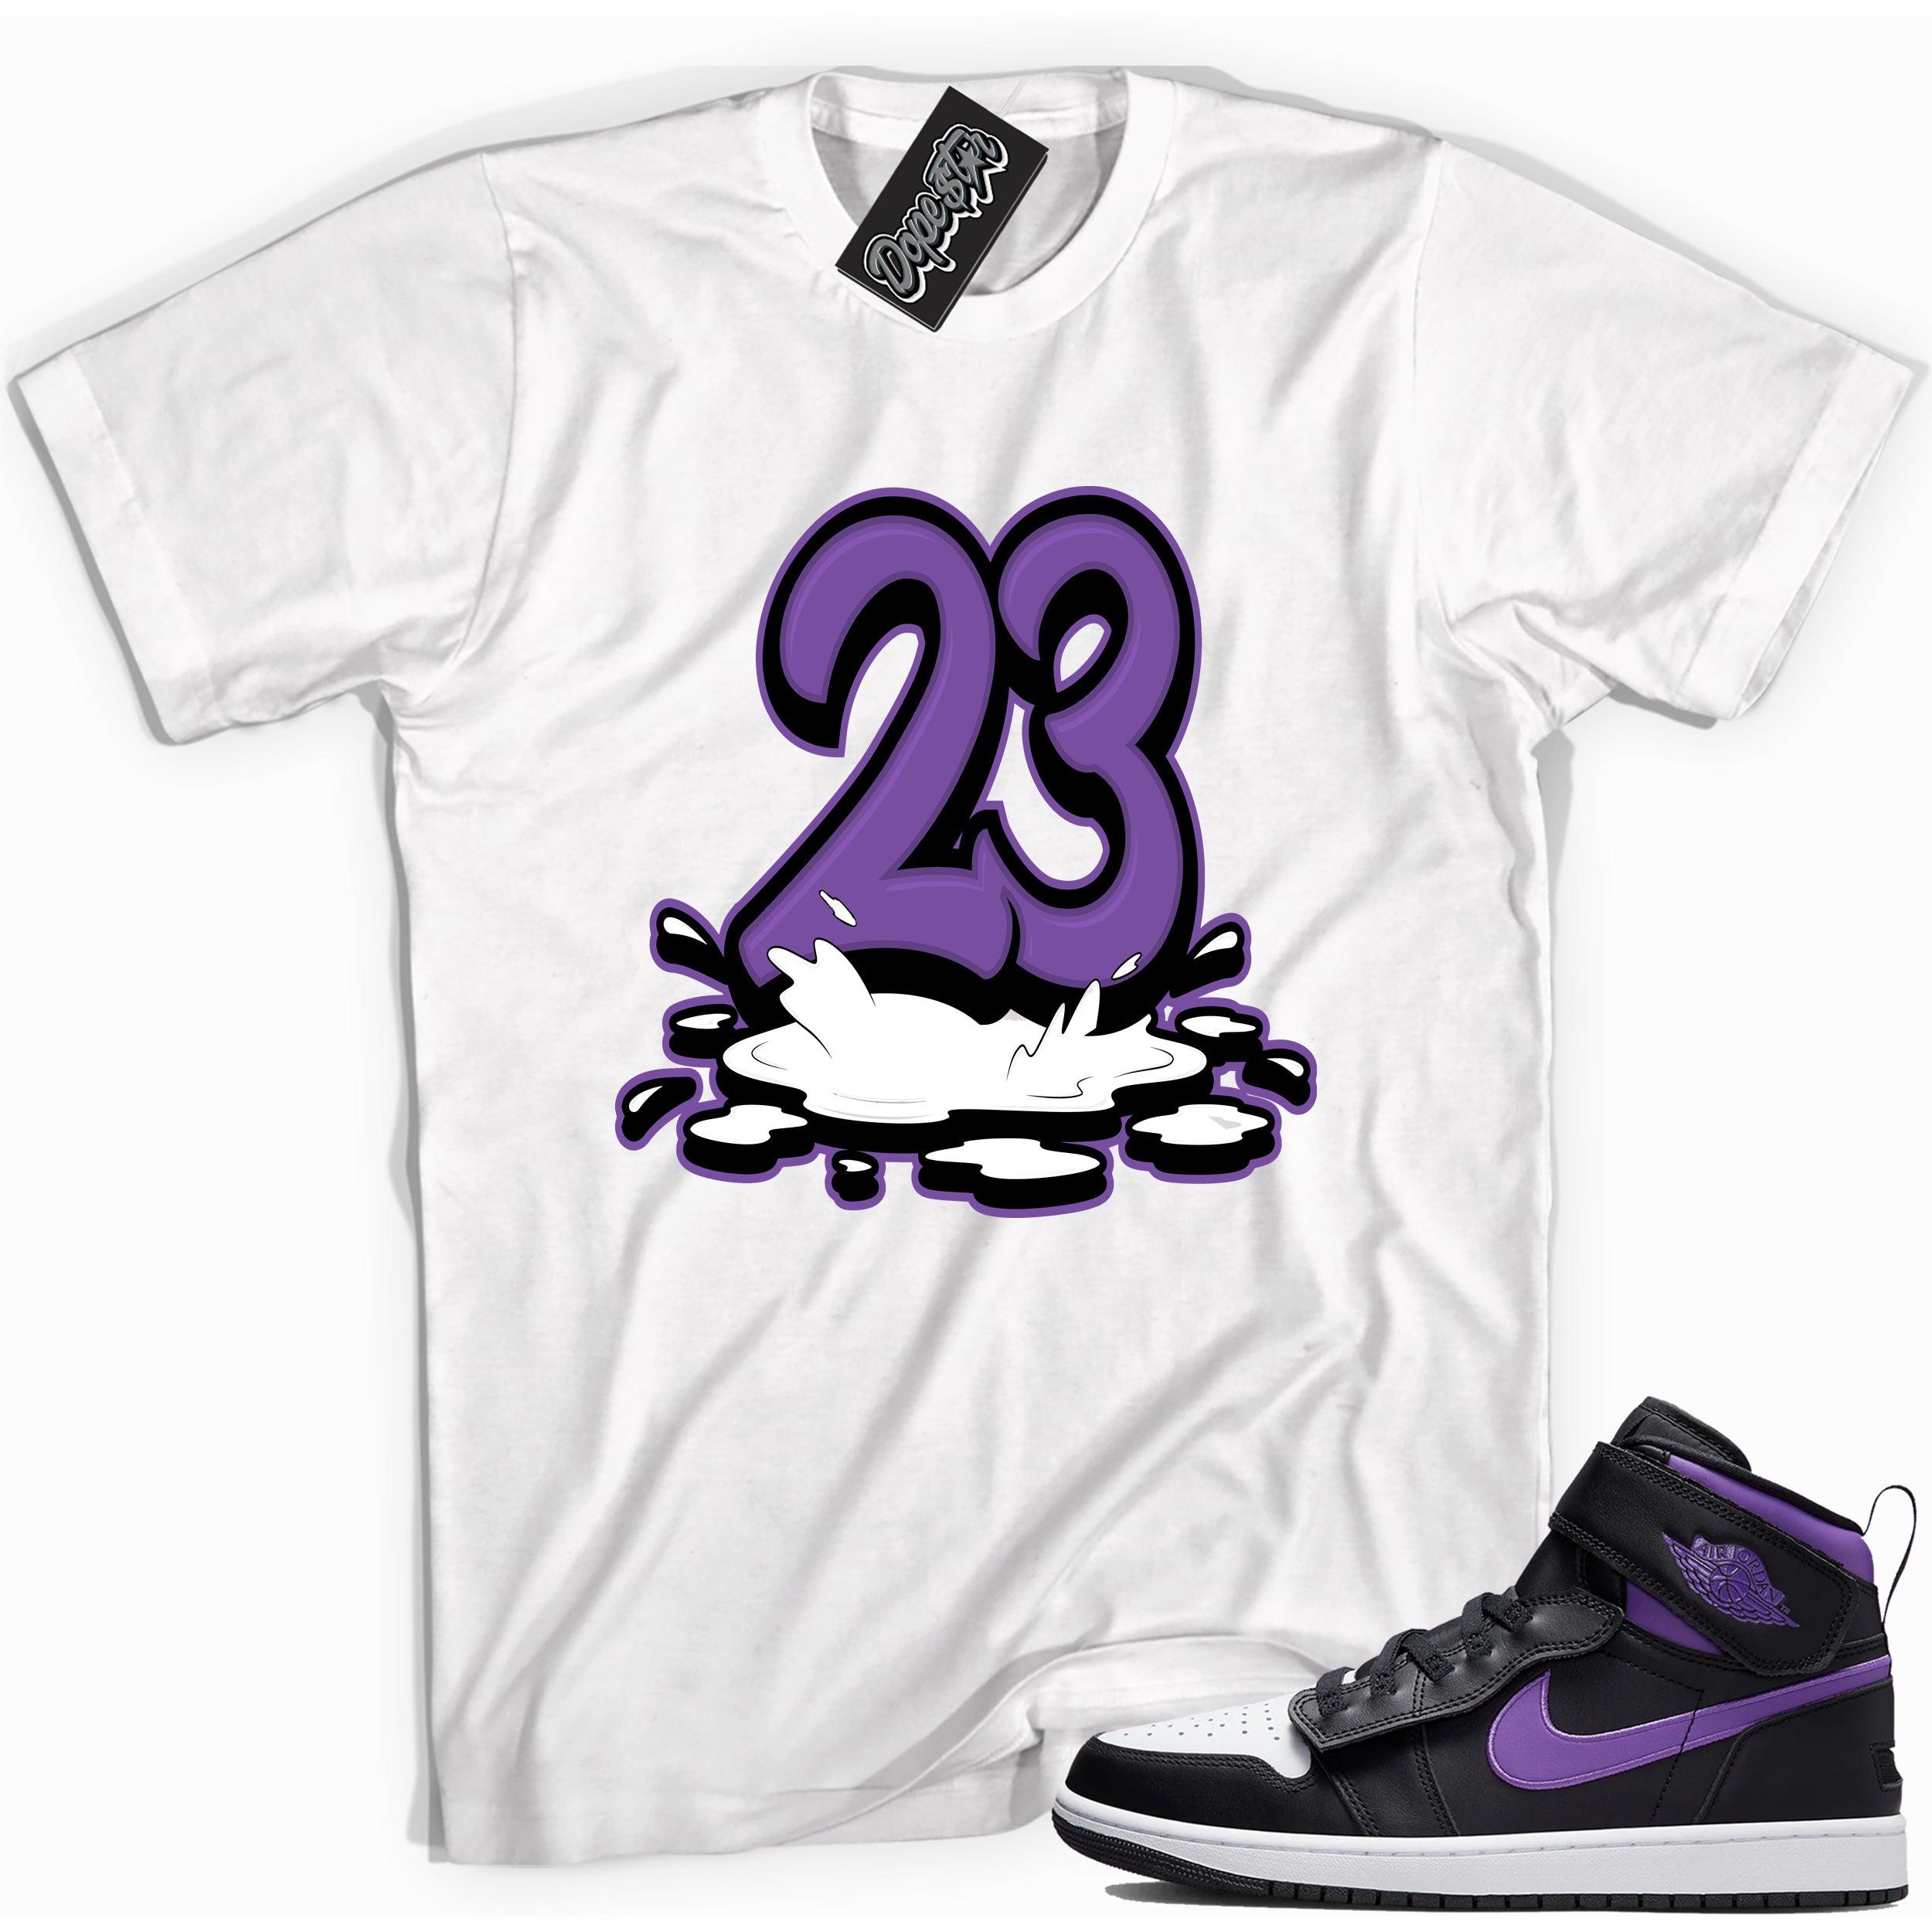 Number 23 Melting Shirt AJ 1 High FlyEase Black Bright Violet photo 